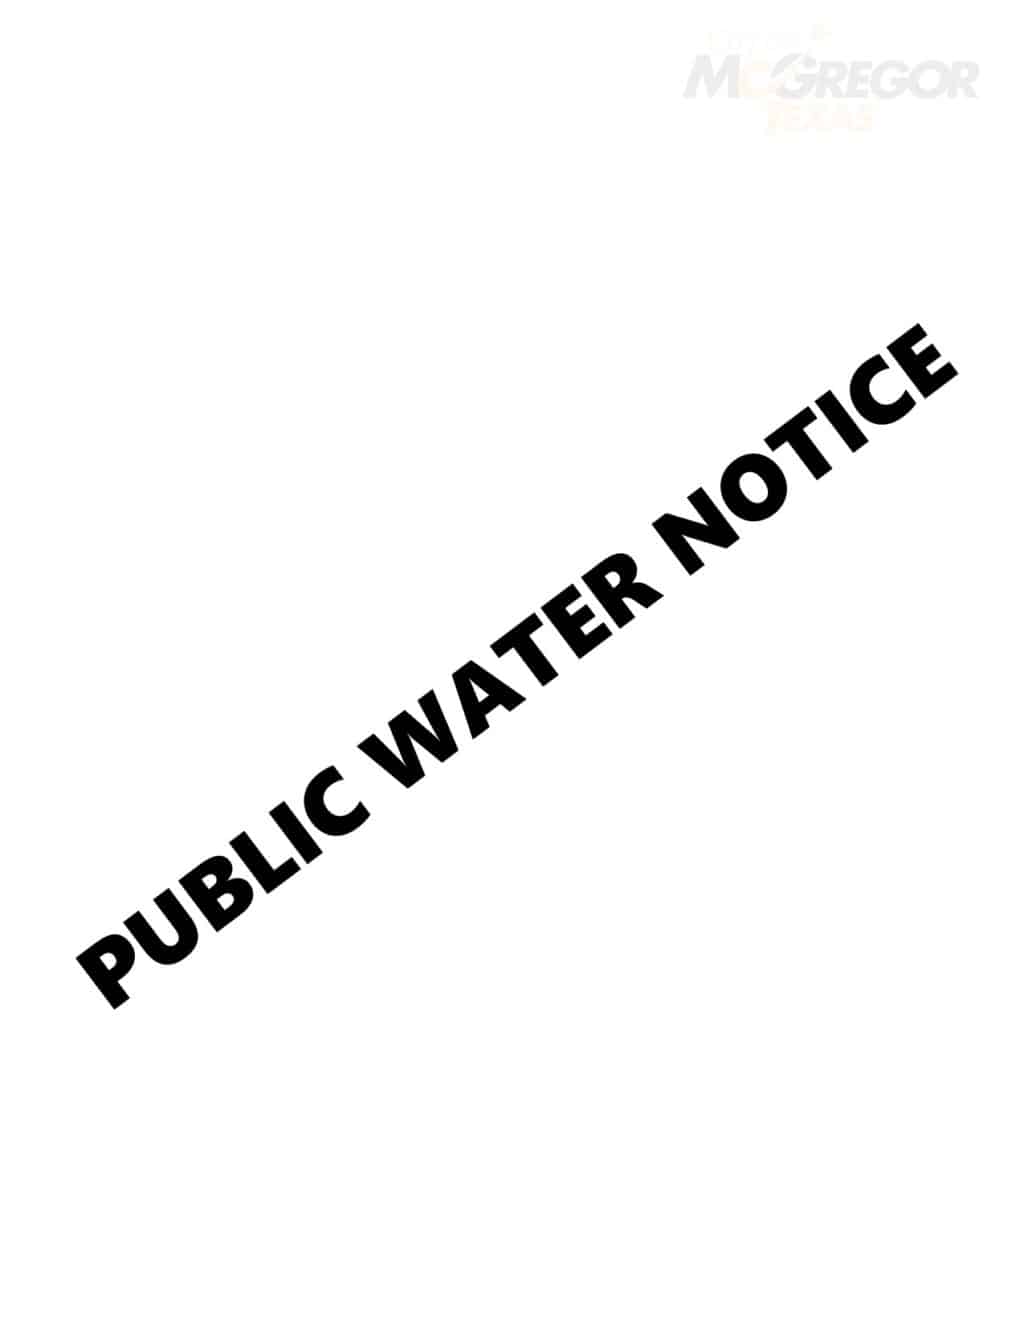 Public Water Notice